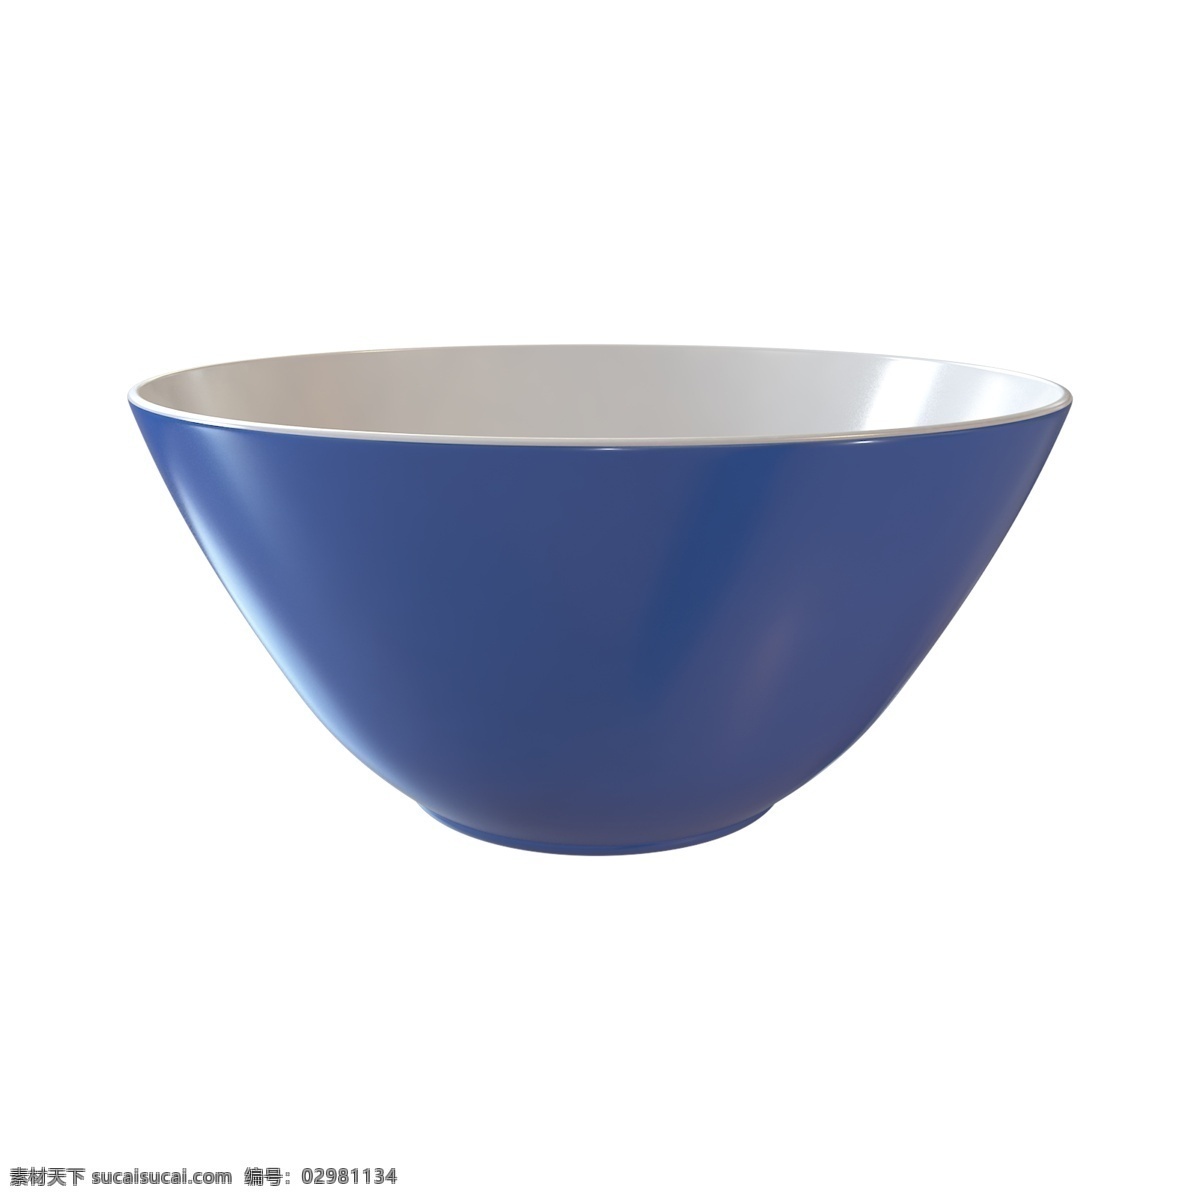 立体 瓷器 大碗 配 图 碗 瓷器碗 蓝色碗 立体碗 中国风器皿 景德镇陶瓷碗 c4d 建模